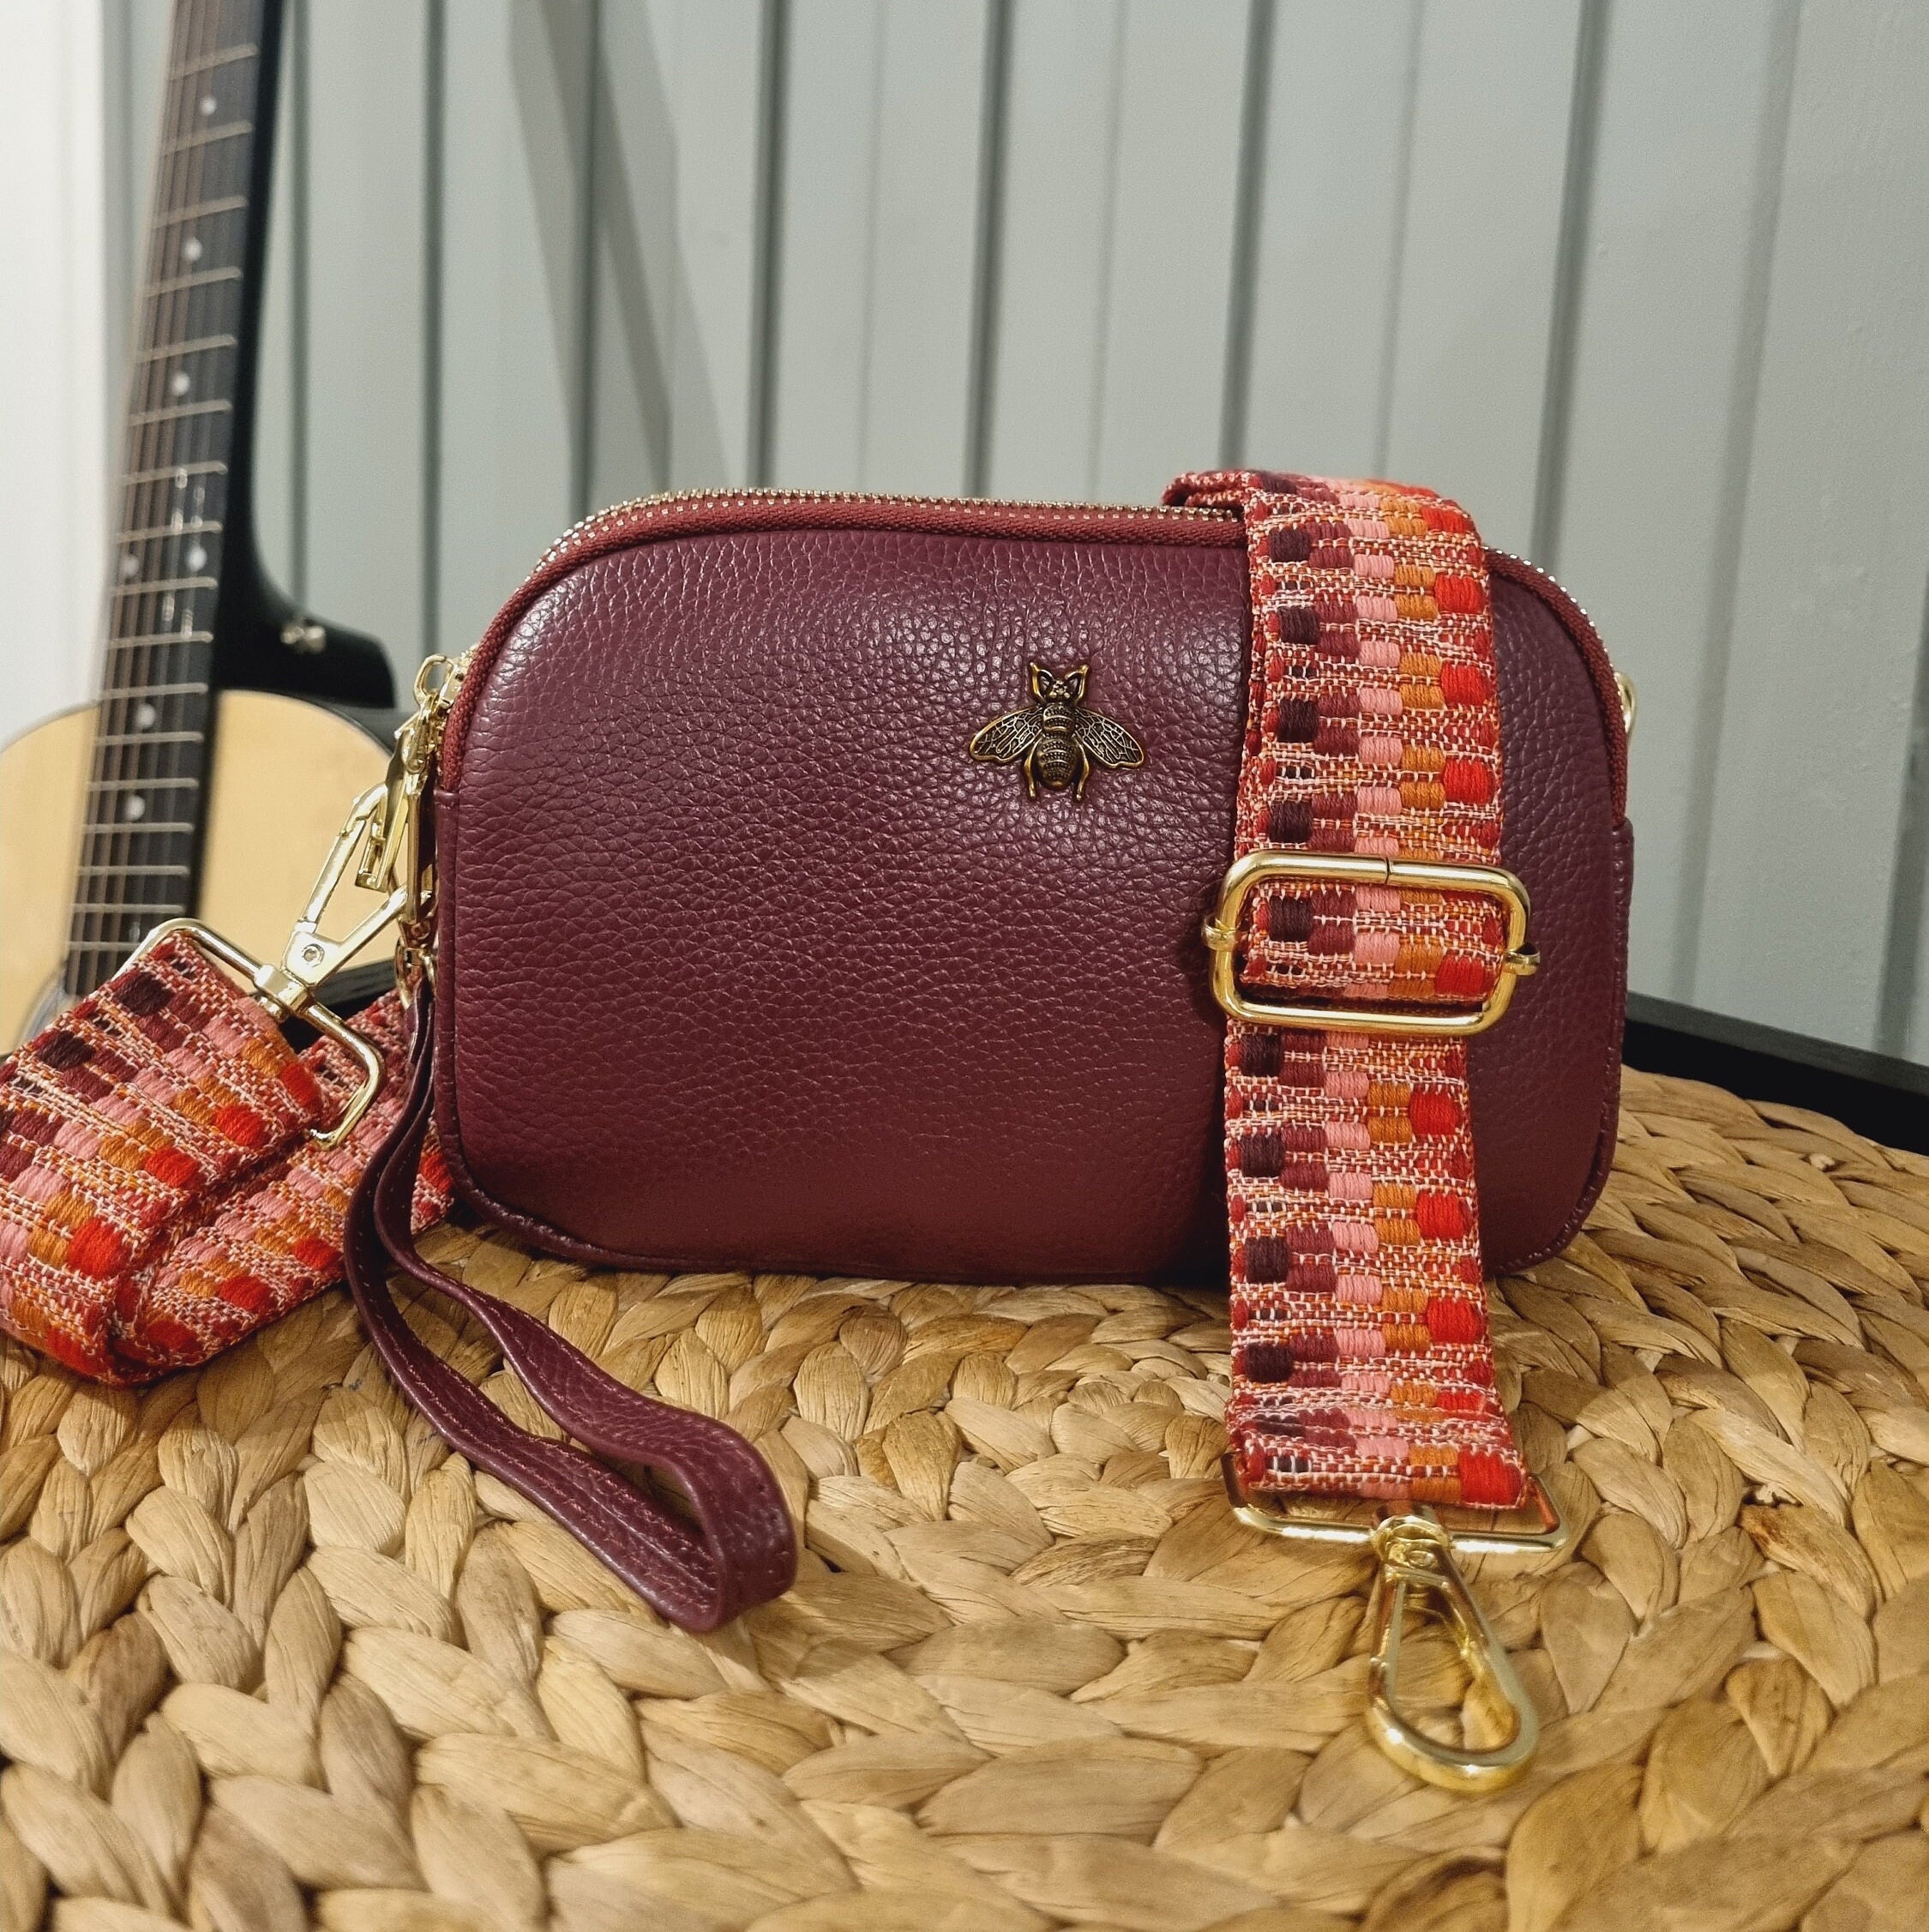 Adjustable Burgundy Leather Bag Strap, Burgundy Bag Strap